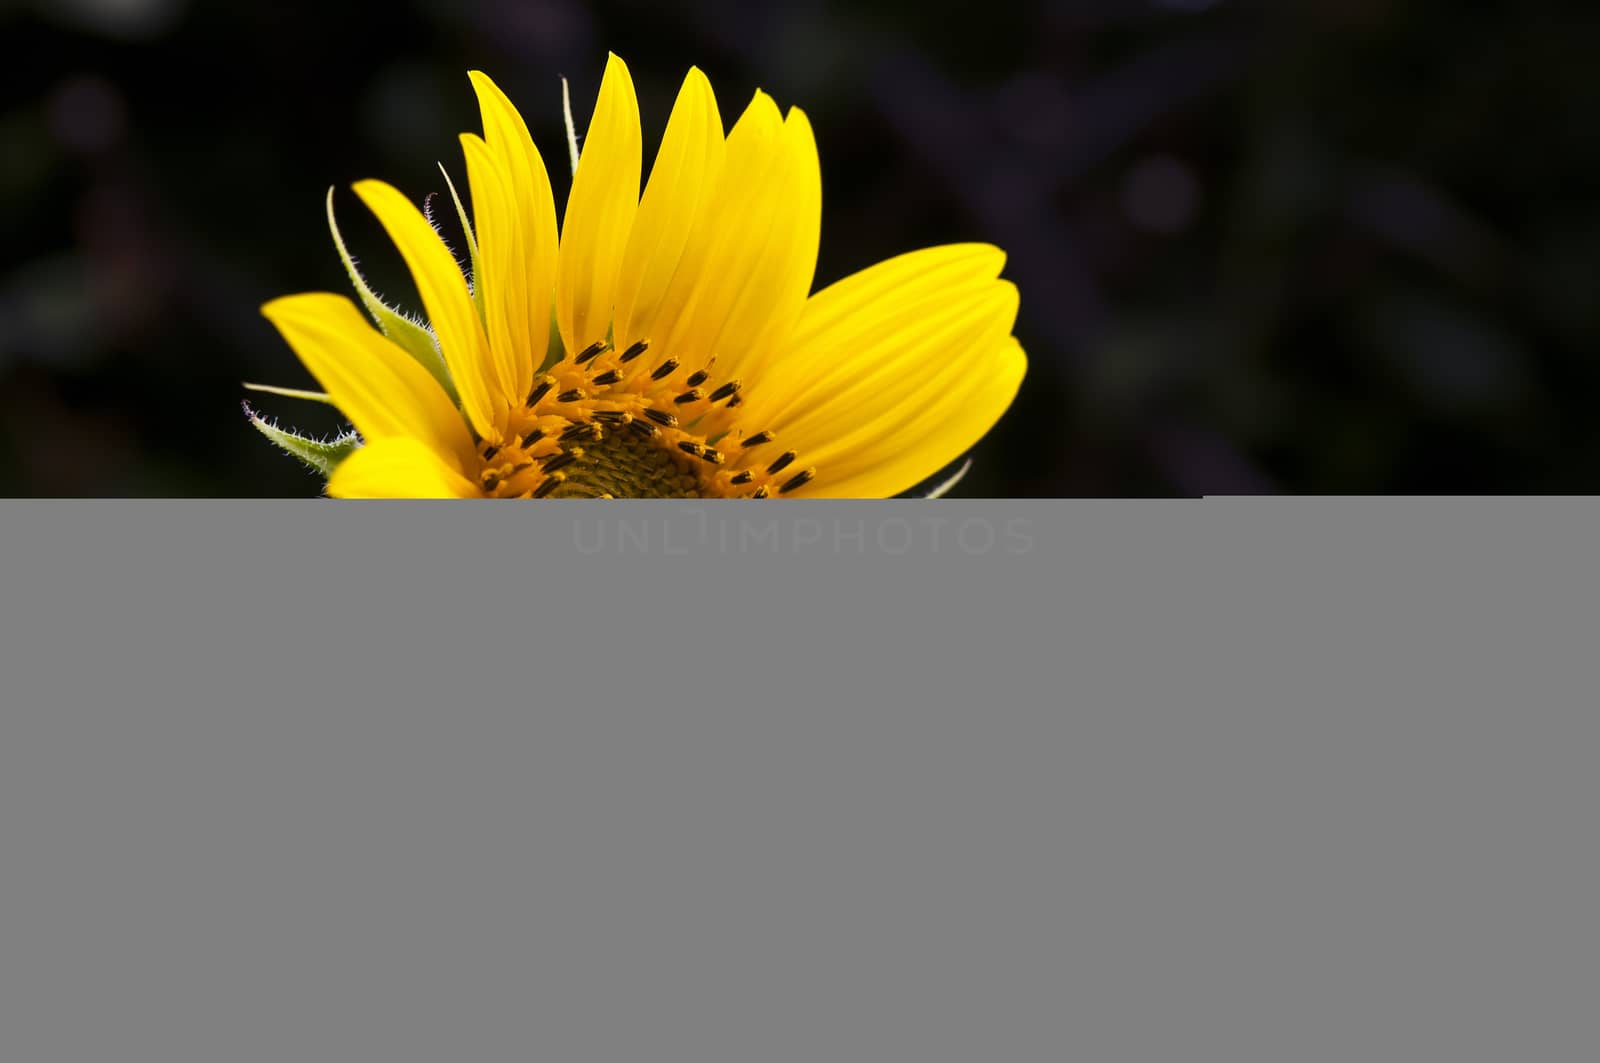 sunflower by pozezan